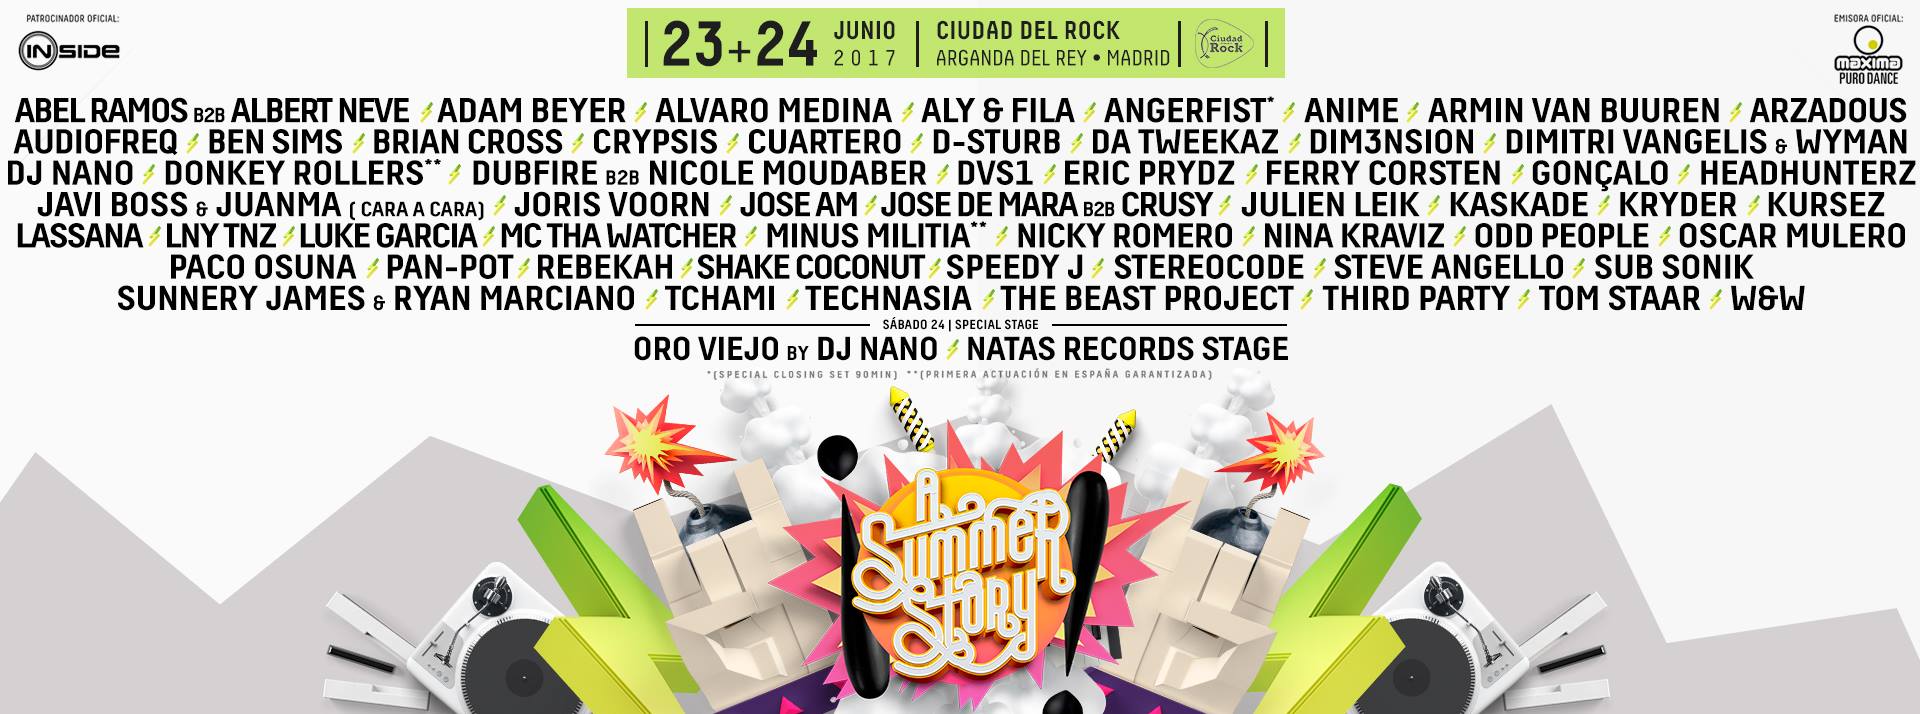 Viernes 23 y sábado 24 de junio. A SUMMER STORY@CIUDAD DEL ROCK